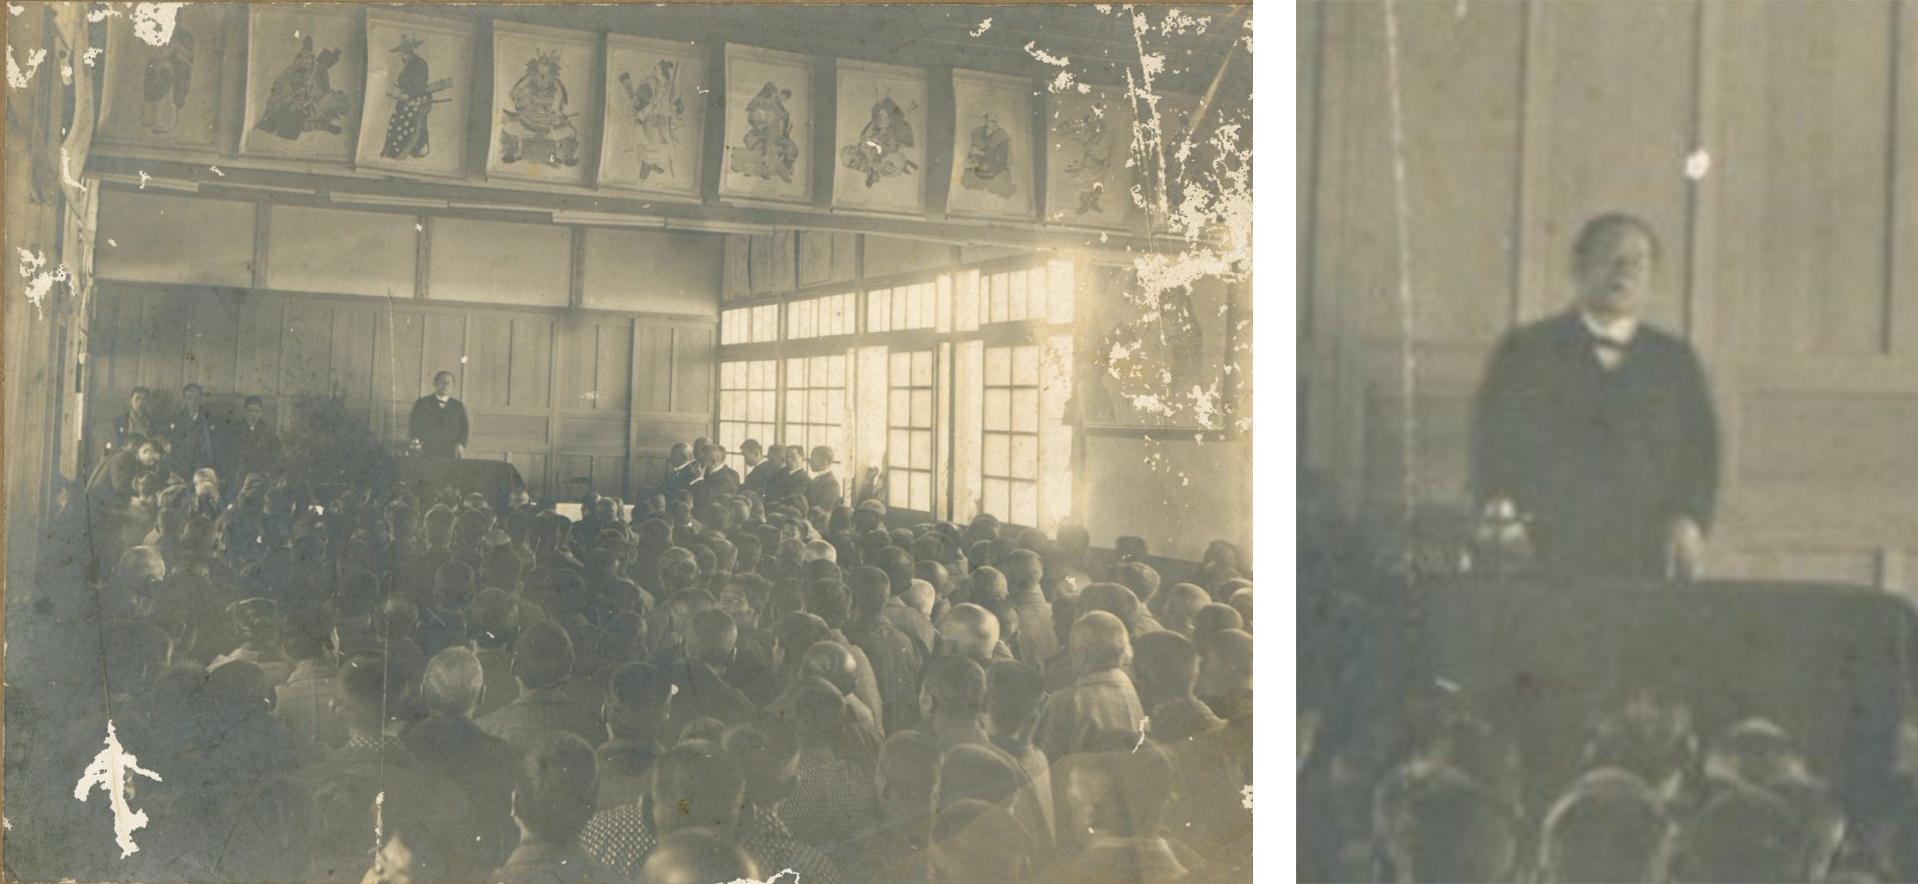 左：室内に沢山の子ども達が集まっており、前方の講演台の前に立って話をしている渋沢栄一が映る白黒写真と右：講演台で渋沢栄一が話をしている拡大写真